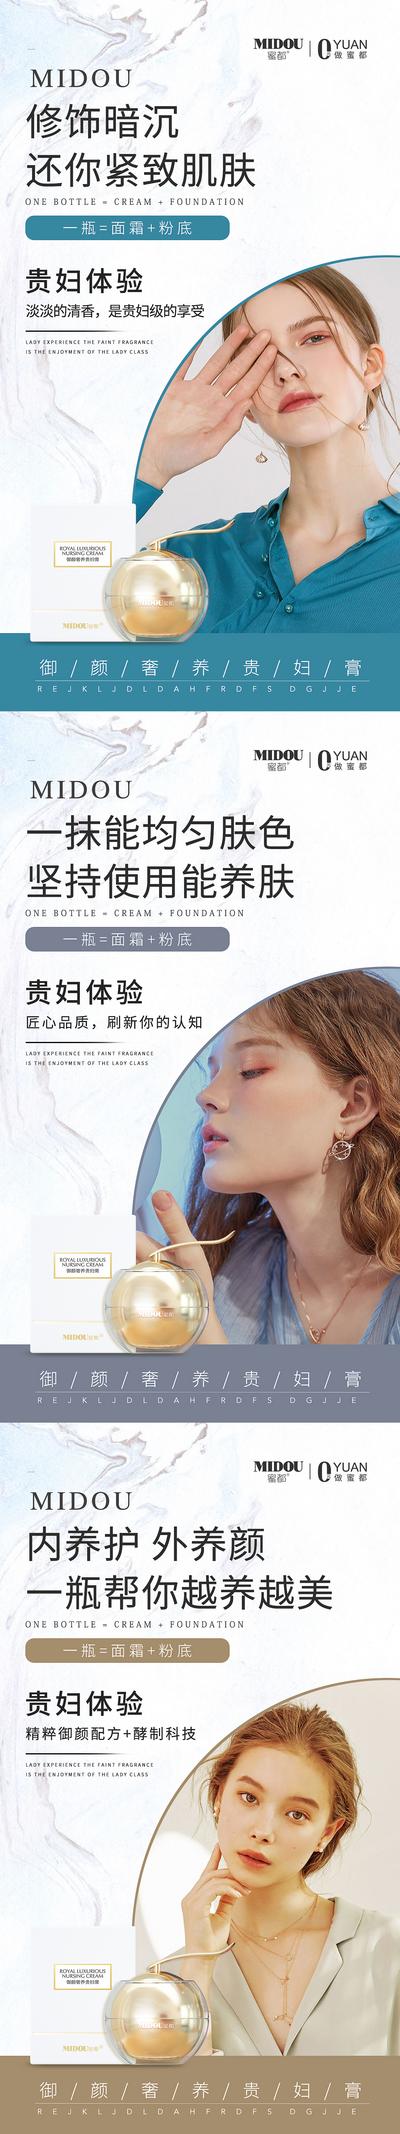 南门网 广告 海报 化妆品 微商 肌肤 暗沉